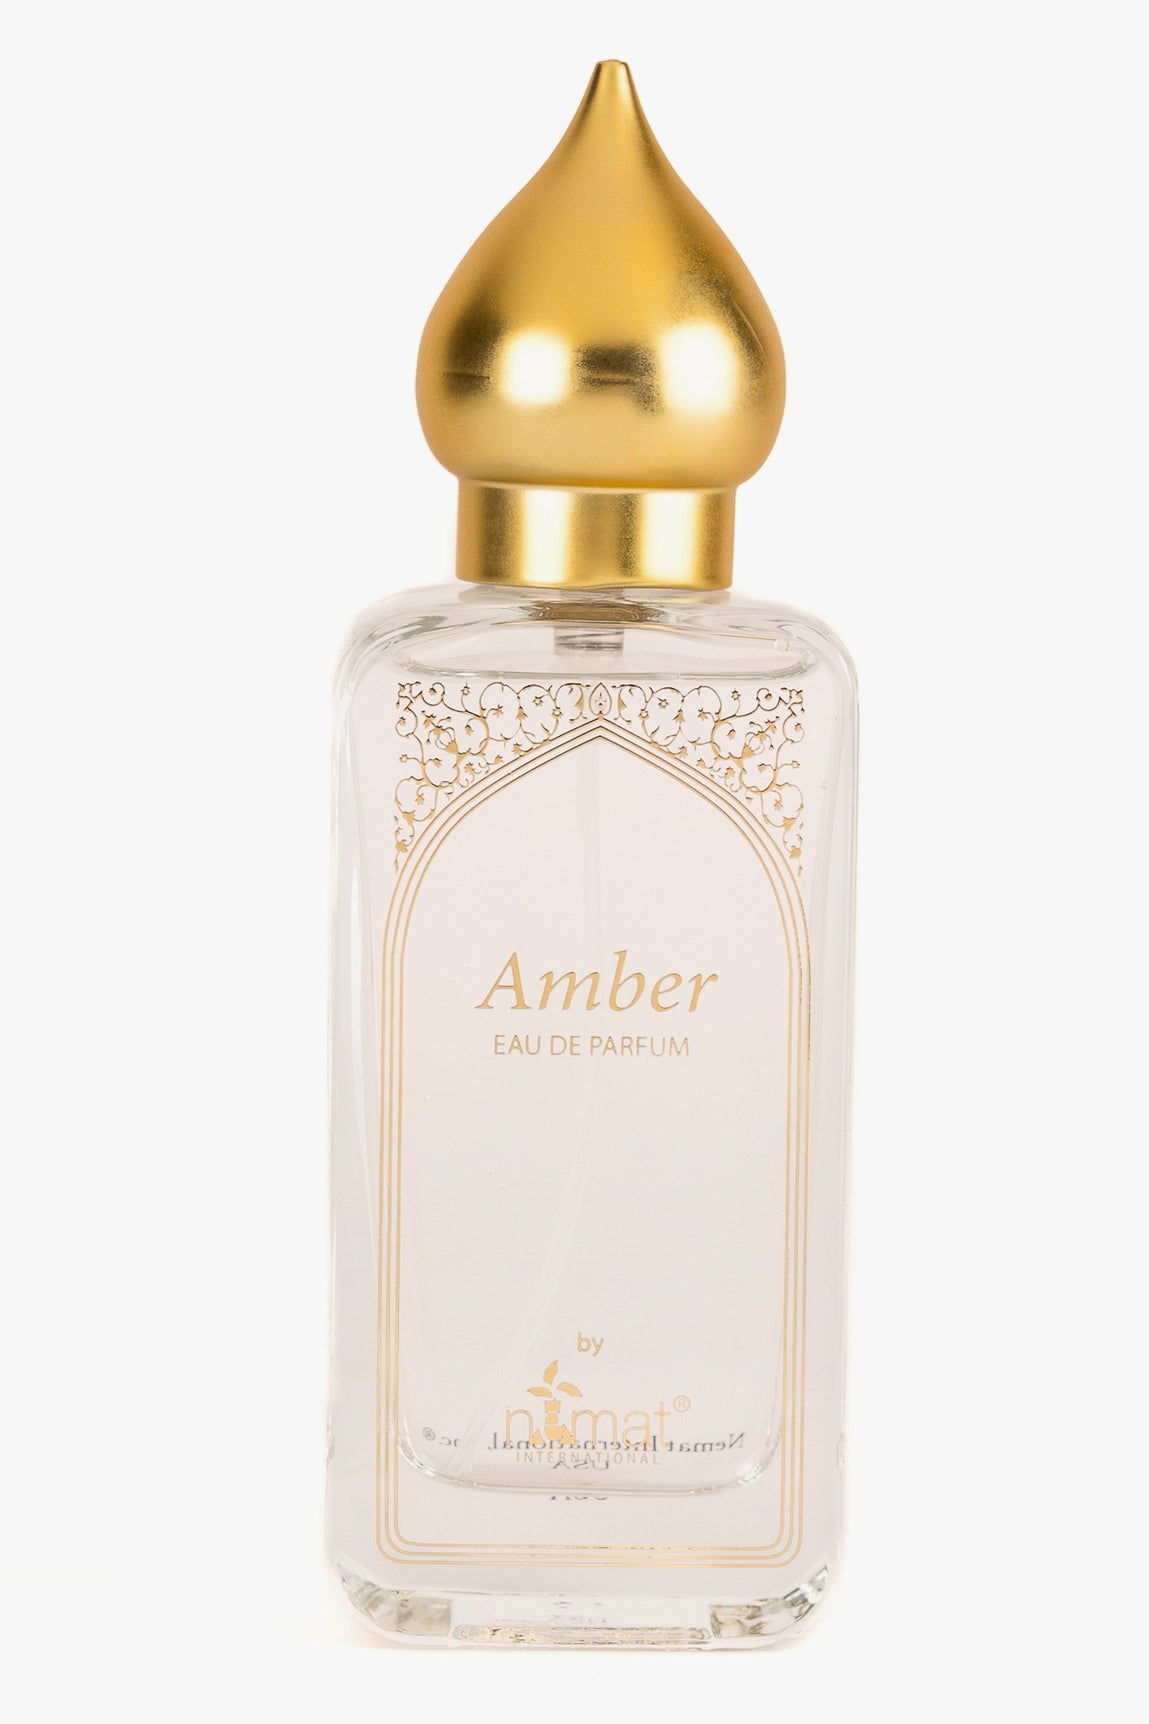 Nemat - Amber Eau De Parfum - 50 mL - Maude